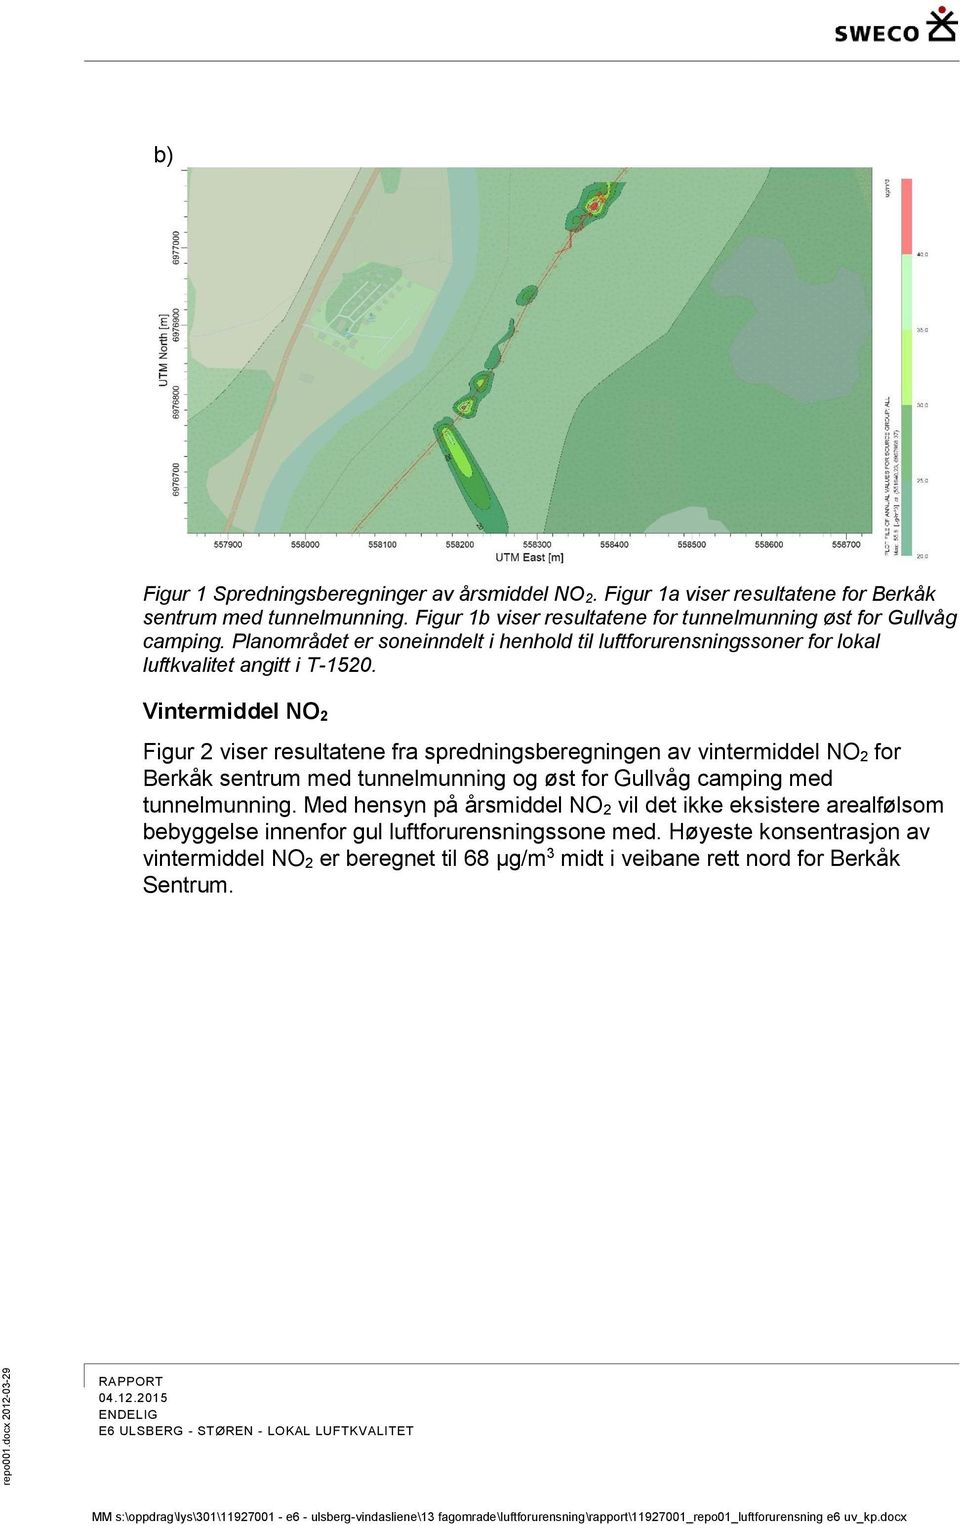 Vintermiddel NO 2 Figur 2 viser resultatene fra spredningsberegningen av vintermiddel NO 2 for Berkåk sentrum med tunnelmunning og øst for Gullvåg camping med tunnelmunning.